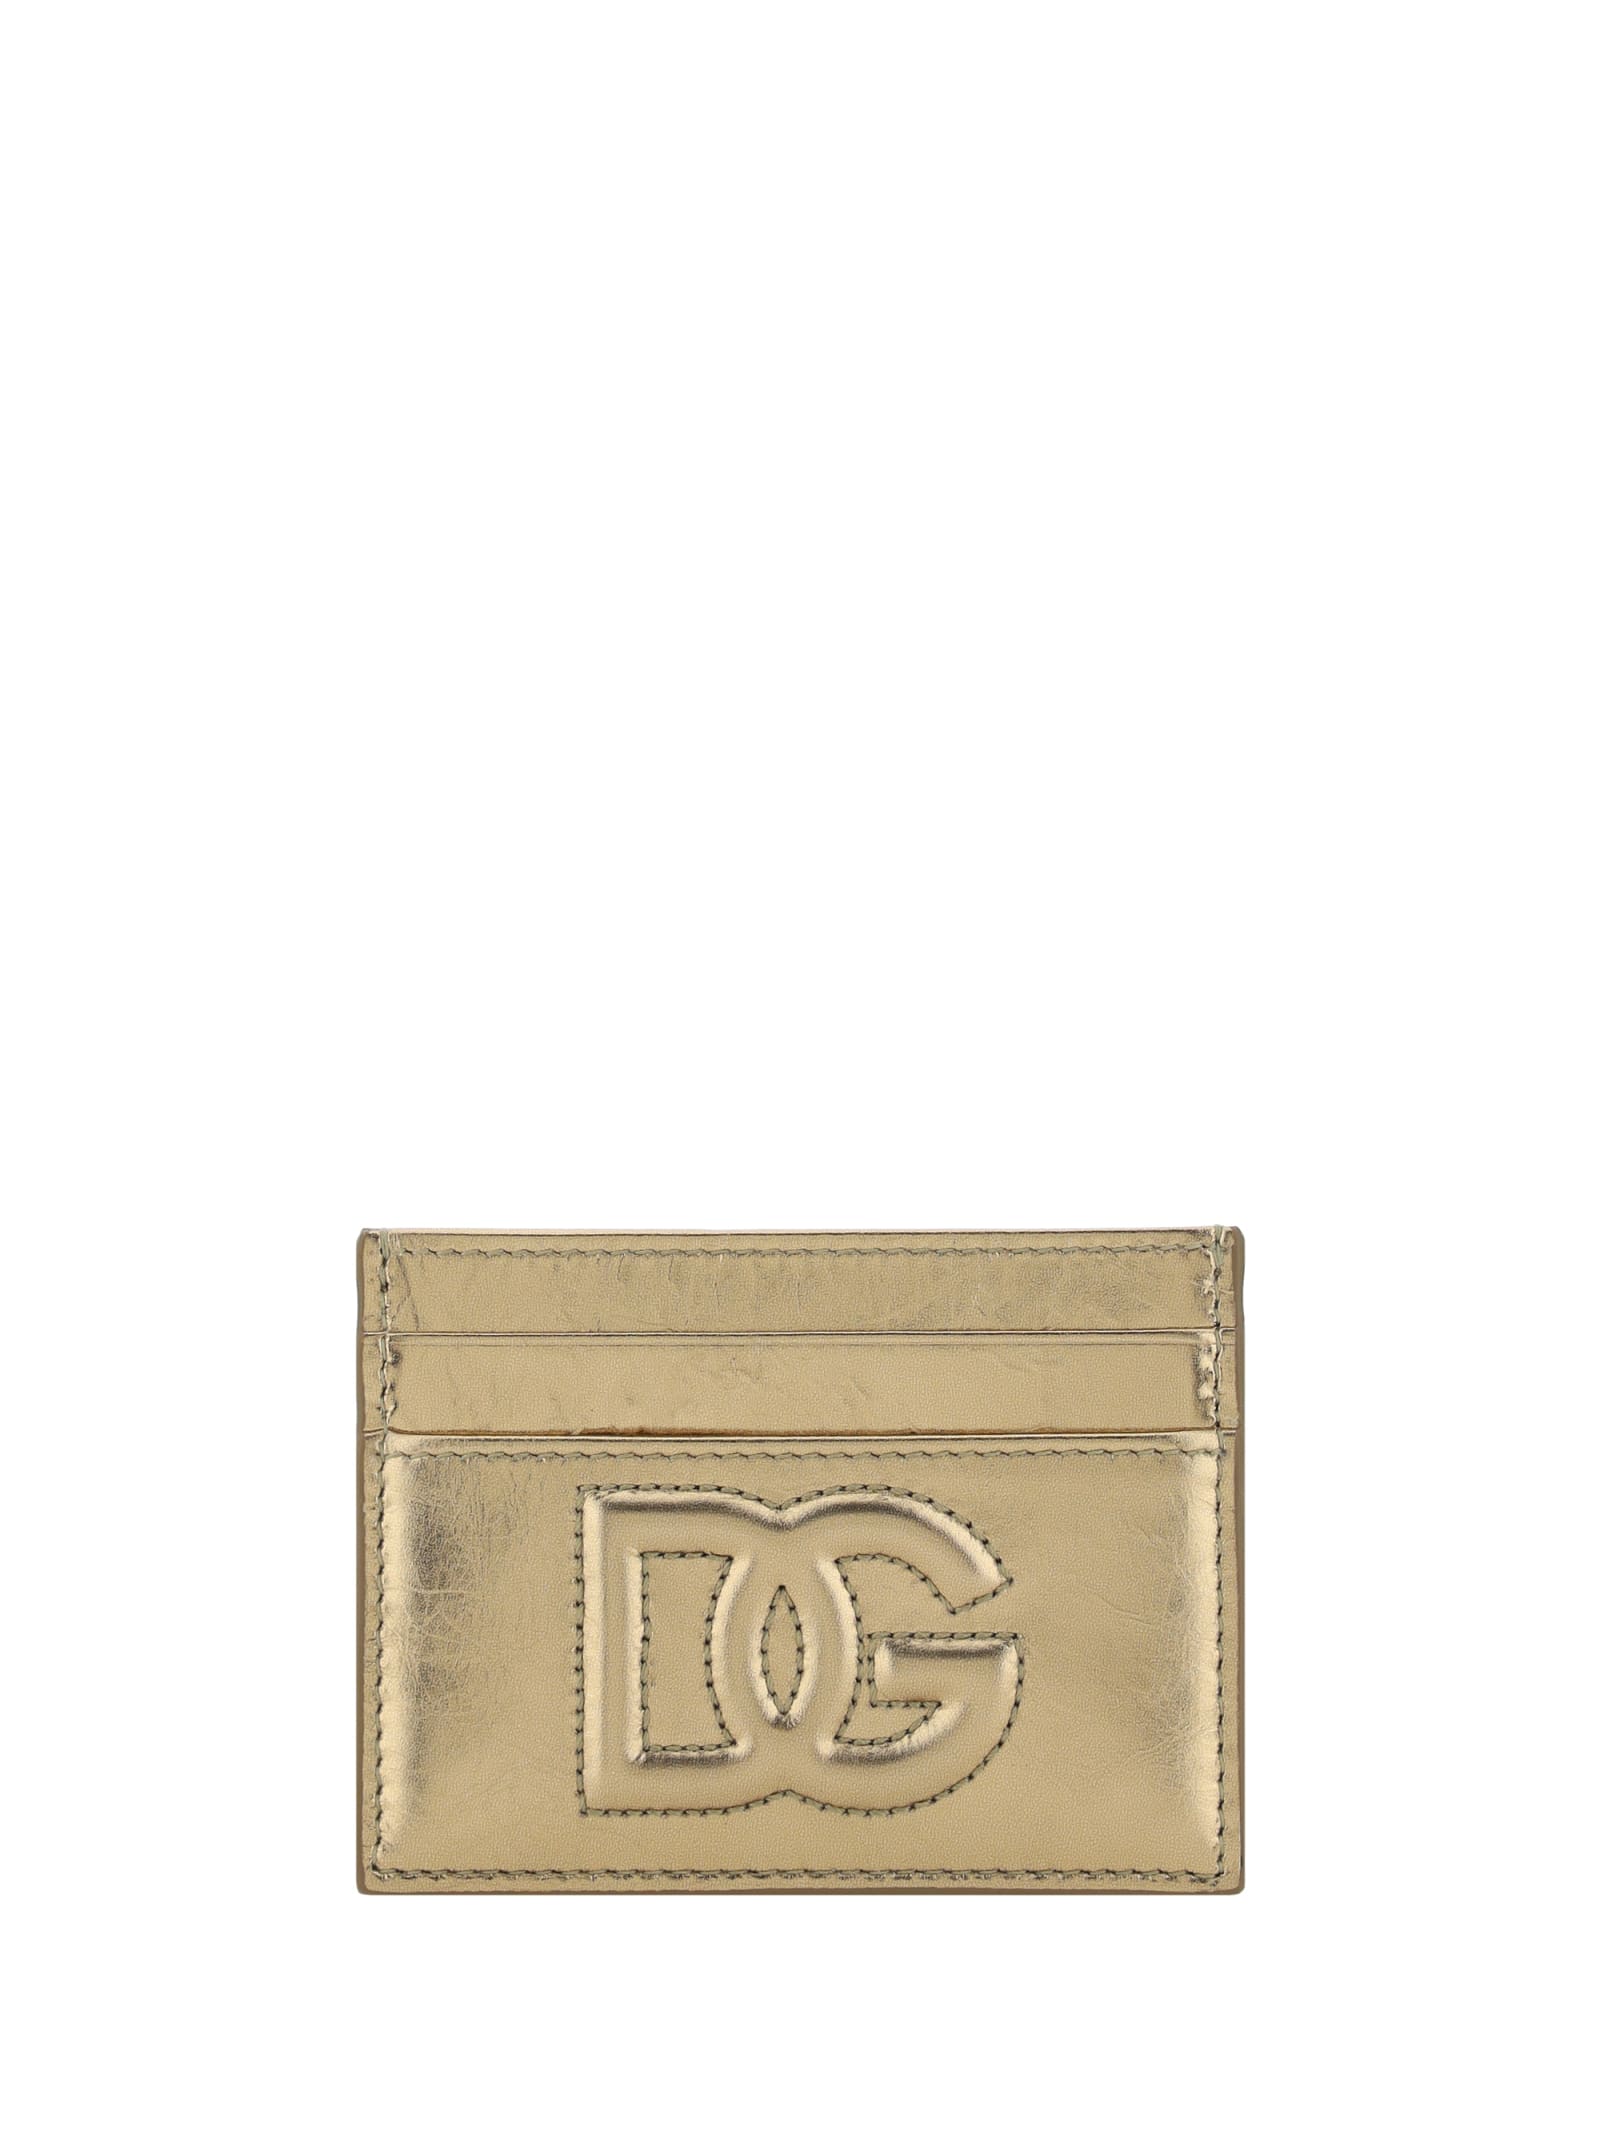 Dolce & Gabbana Card Case In Golden